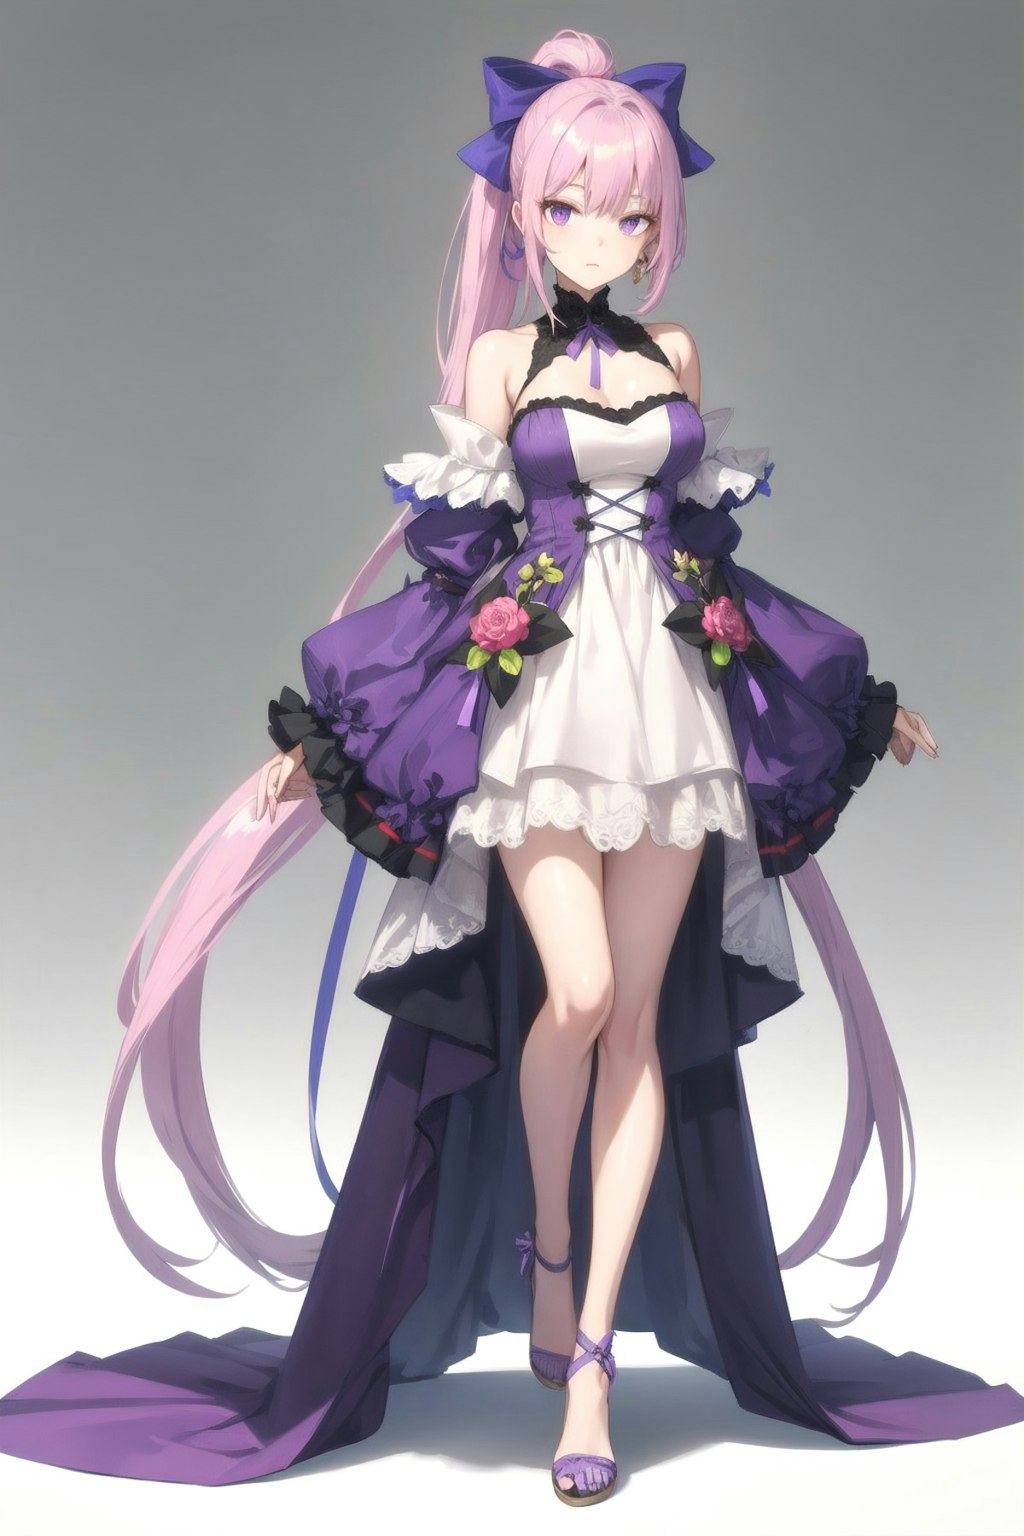 紫色のドレス